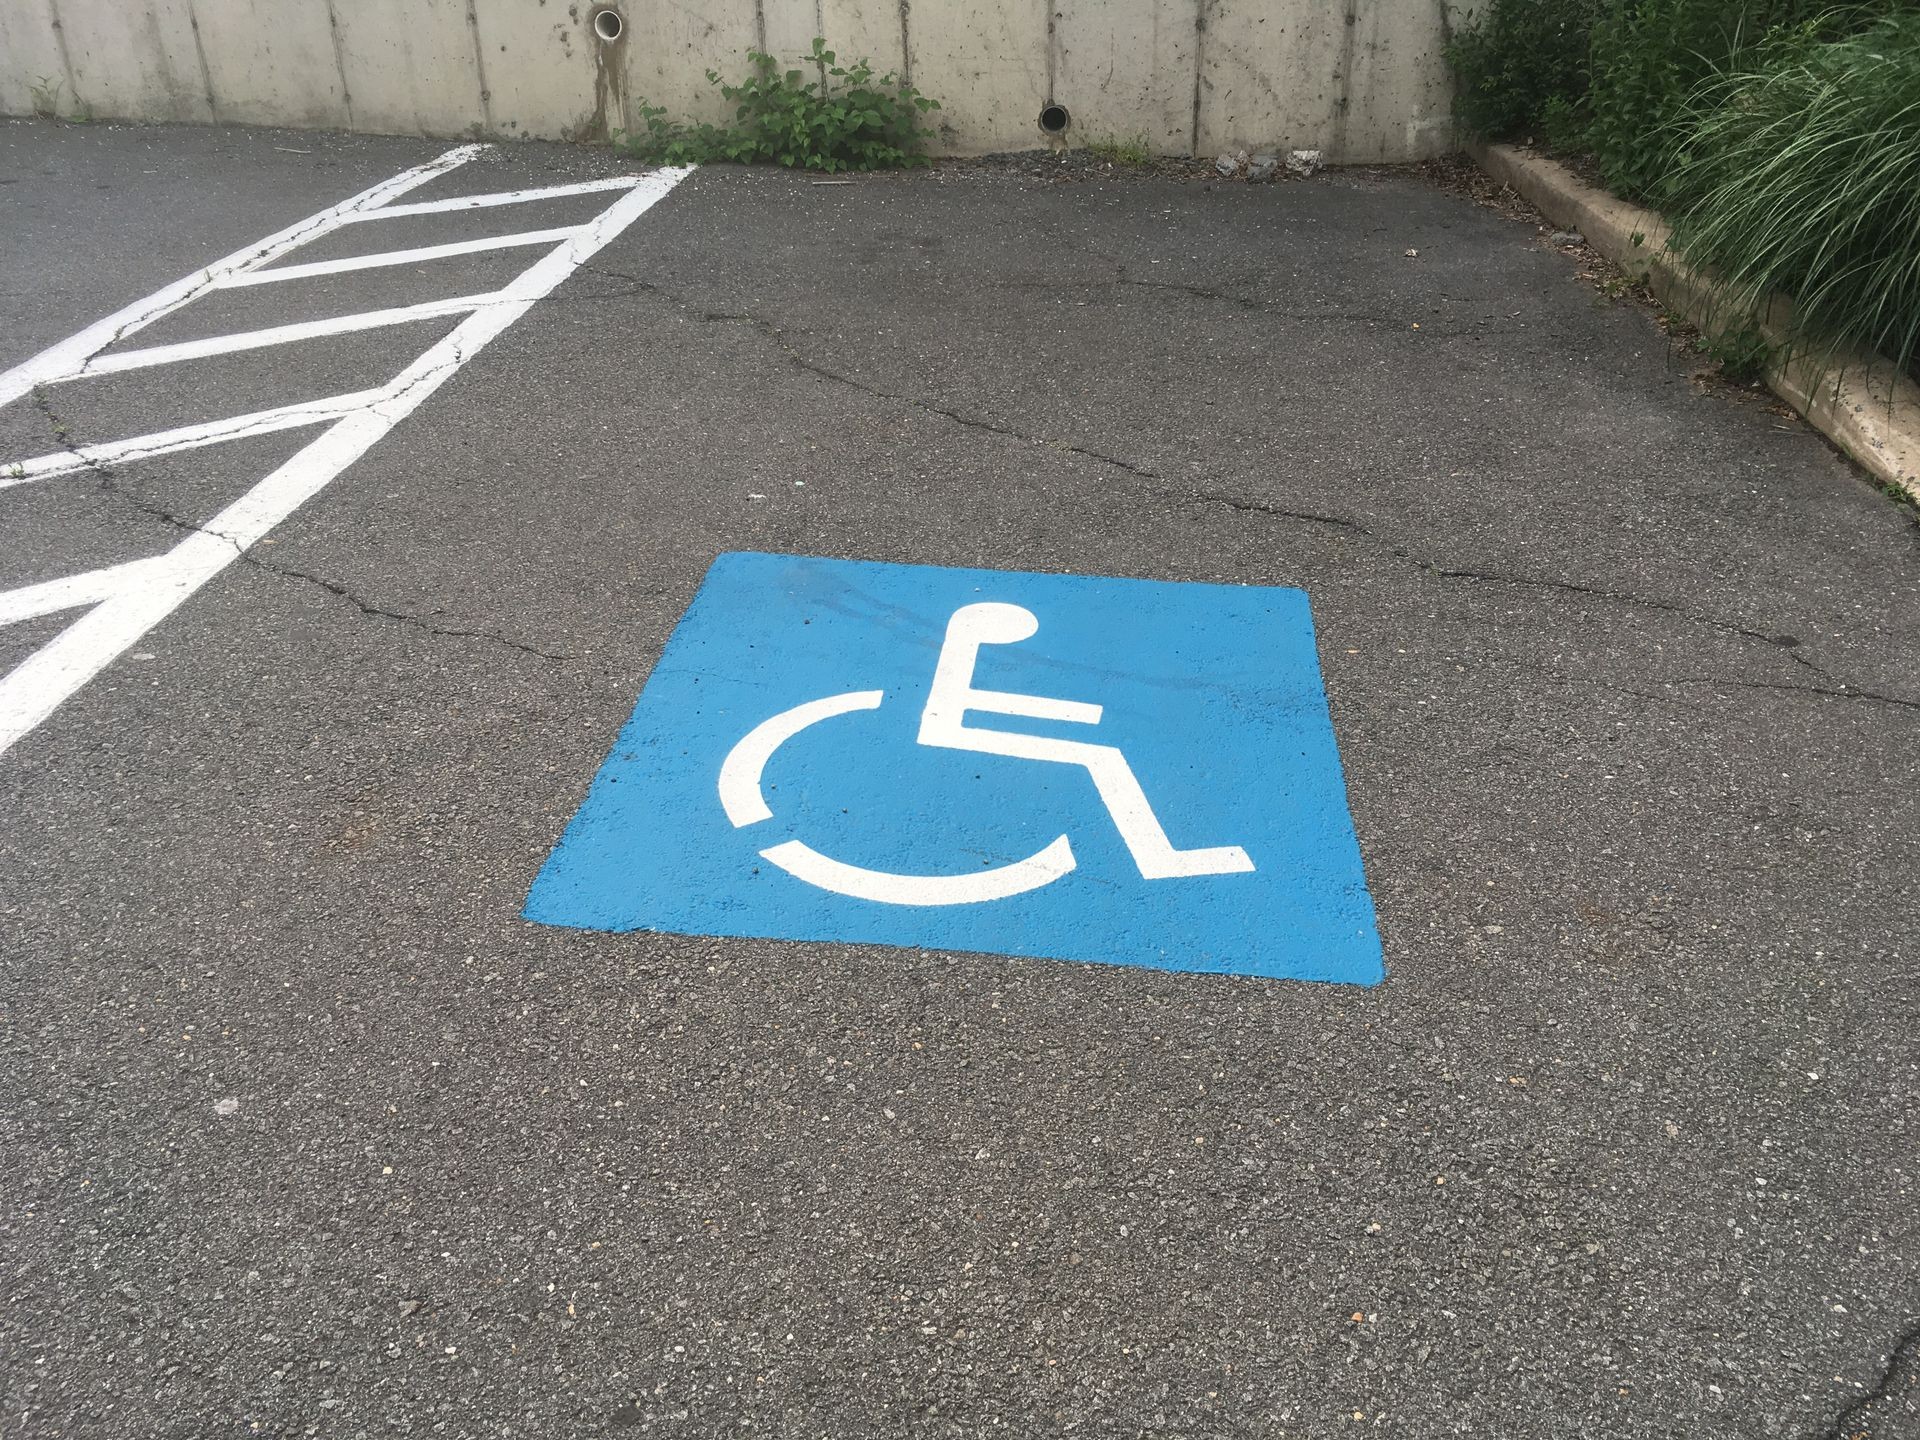 Handicapped Parking Space - Handicap Parking Space - ADA Compliant Parking